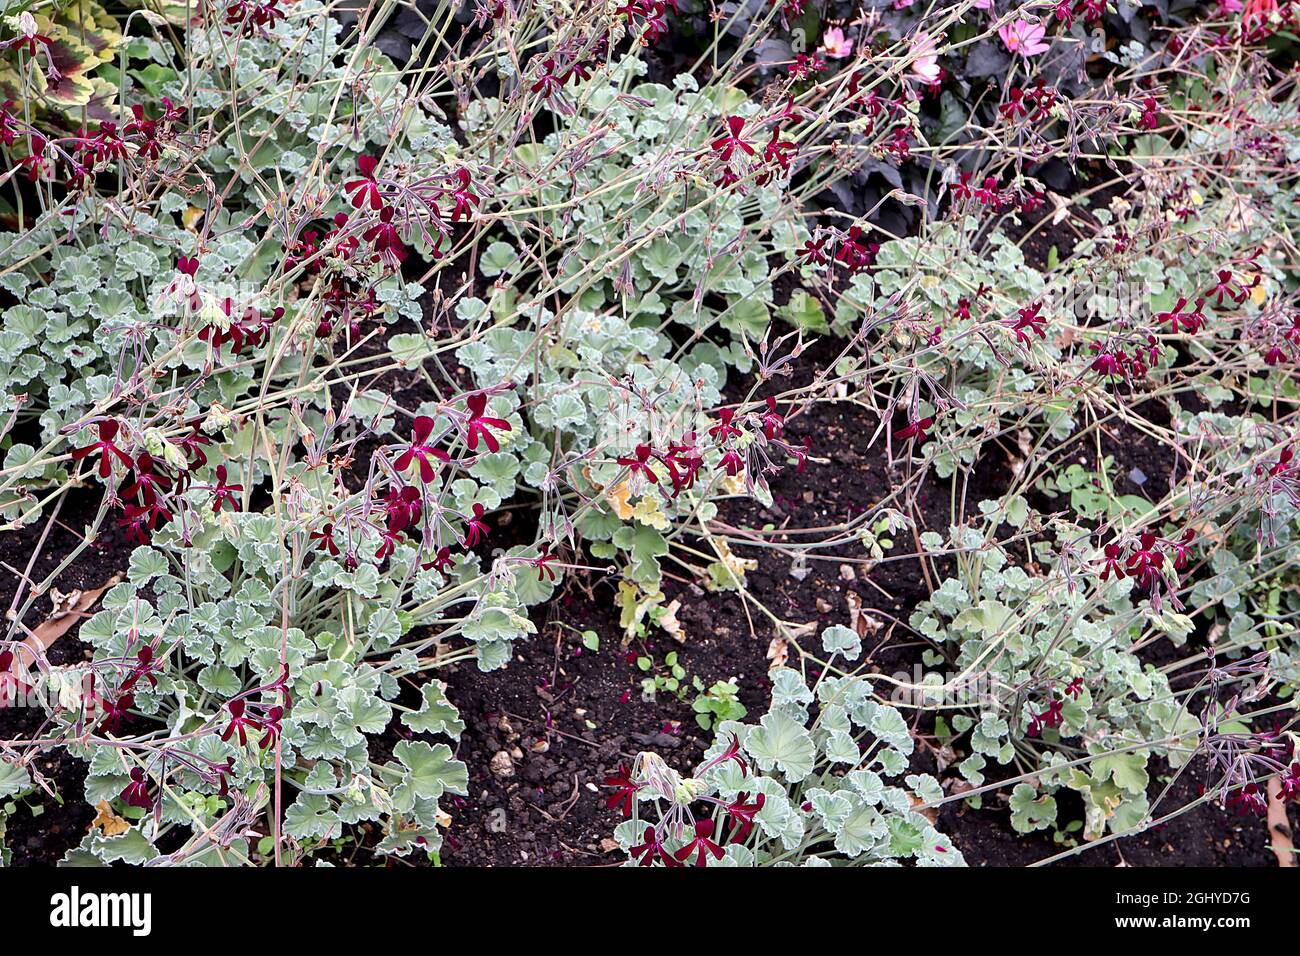 Pelargonium sidoides geranio africano - piccoli gruppi di fiori rossi cremisi con petali sottili, agosto, Inghilterra, Regno Unito Foto Stock